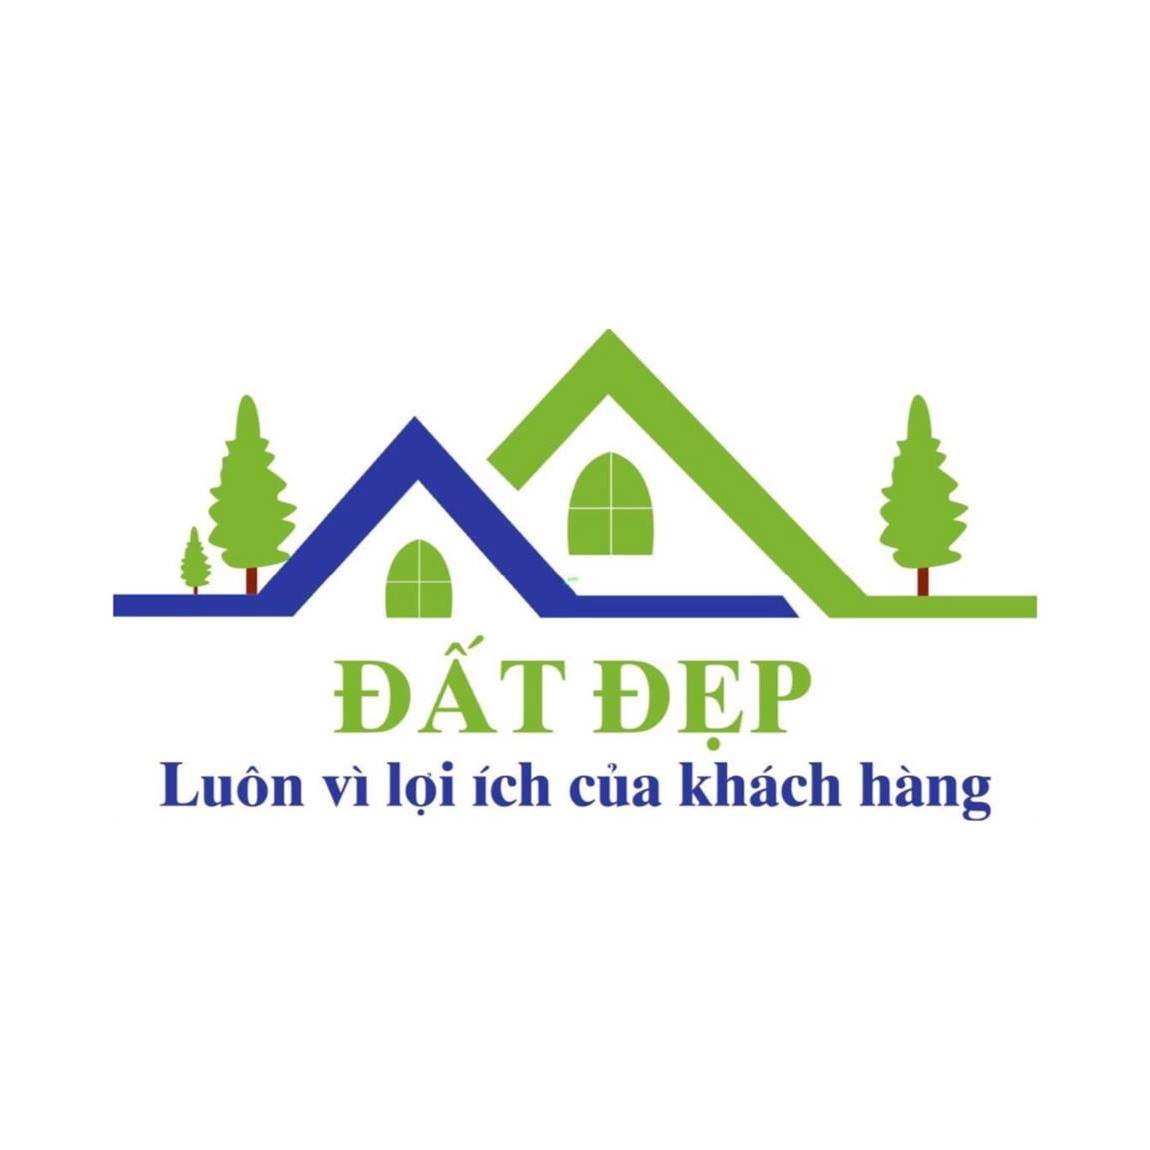 Logo nhà đất đẹp